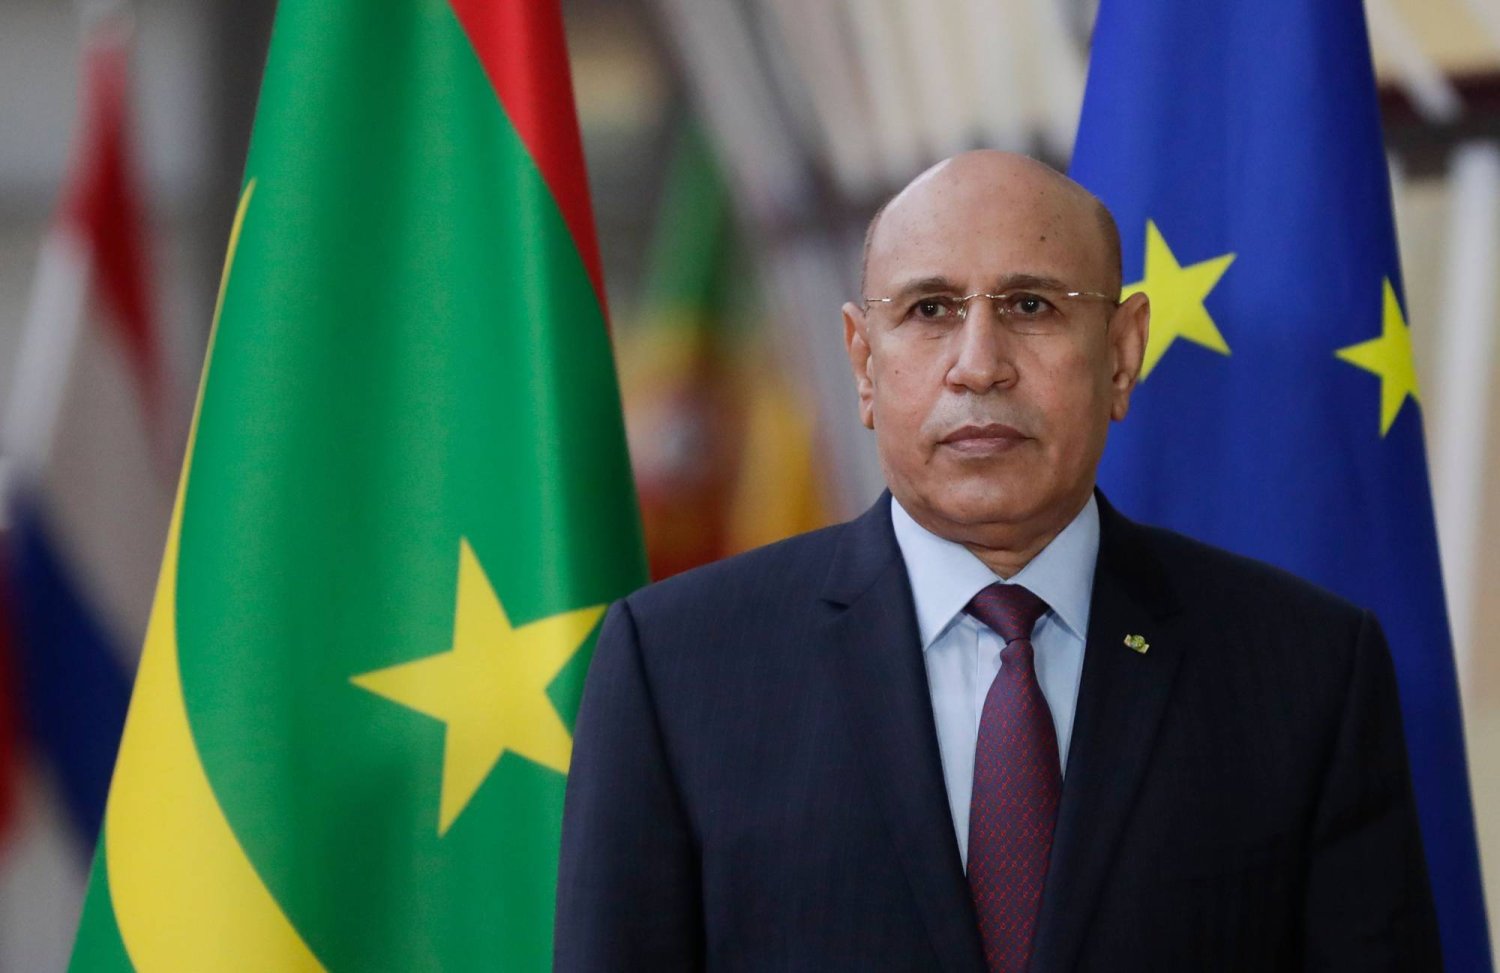 الأحزاب الداعمة للحكومة الموريتانية أكدت دعمها لترشح الرئيس لفترة ثانية (الشرق الأوسط)